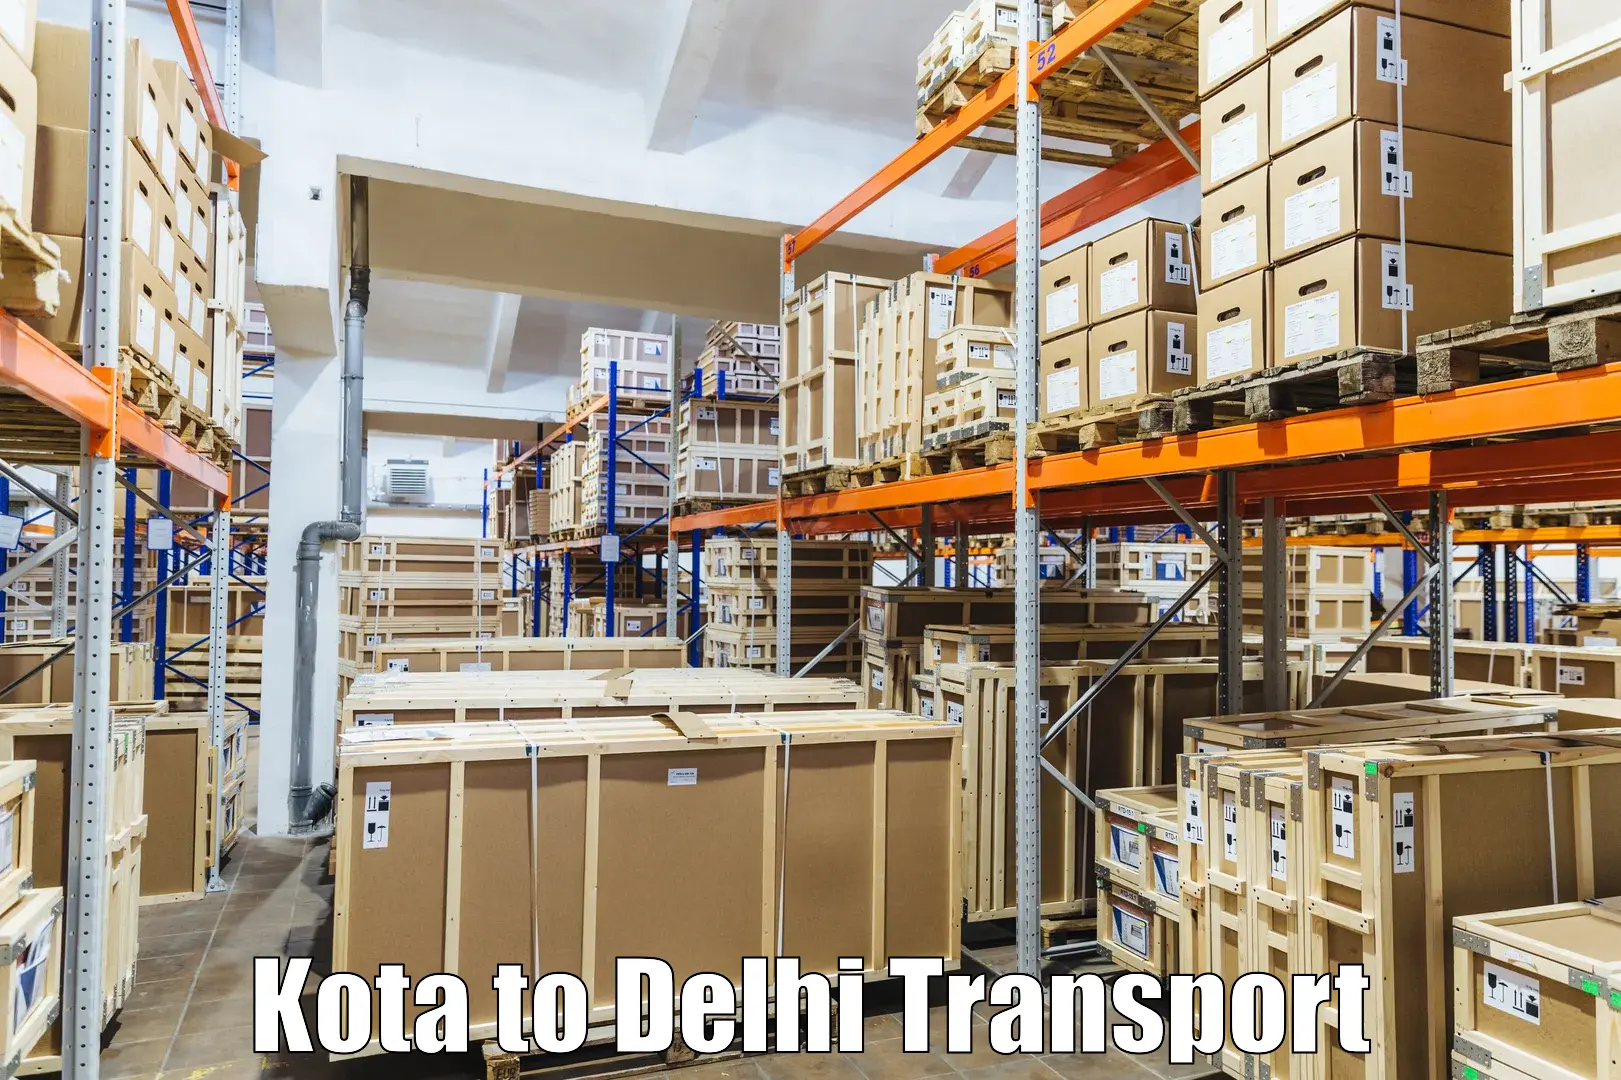 Best transport services in India Kota to Ashok Vihar